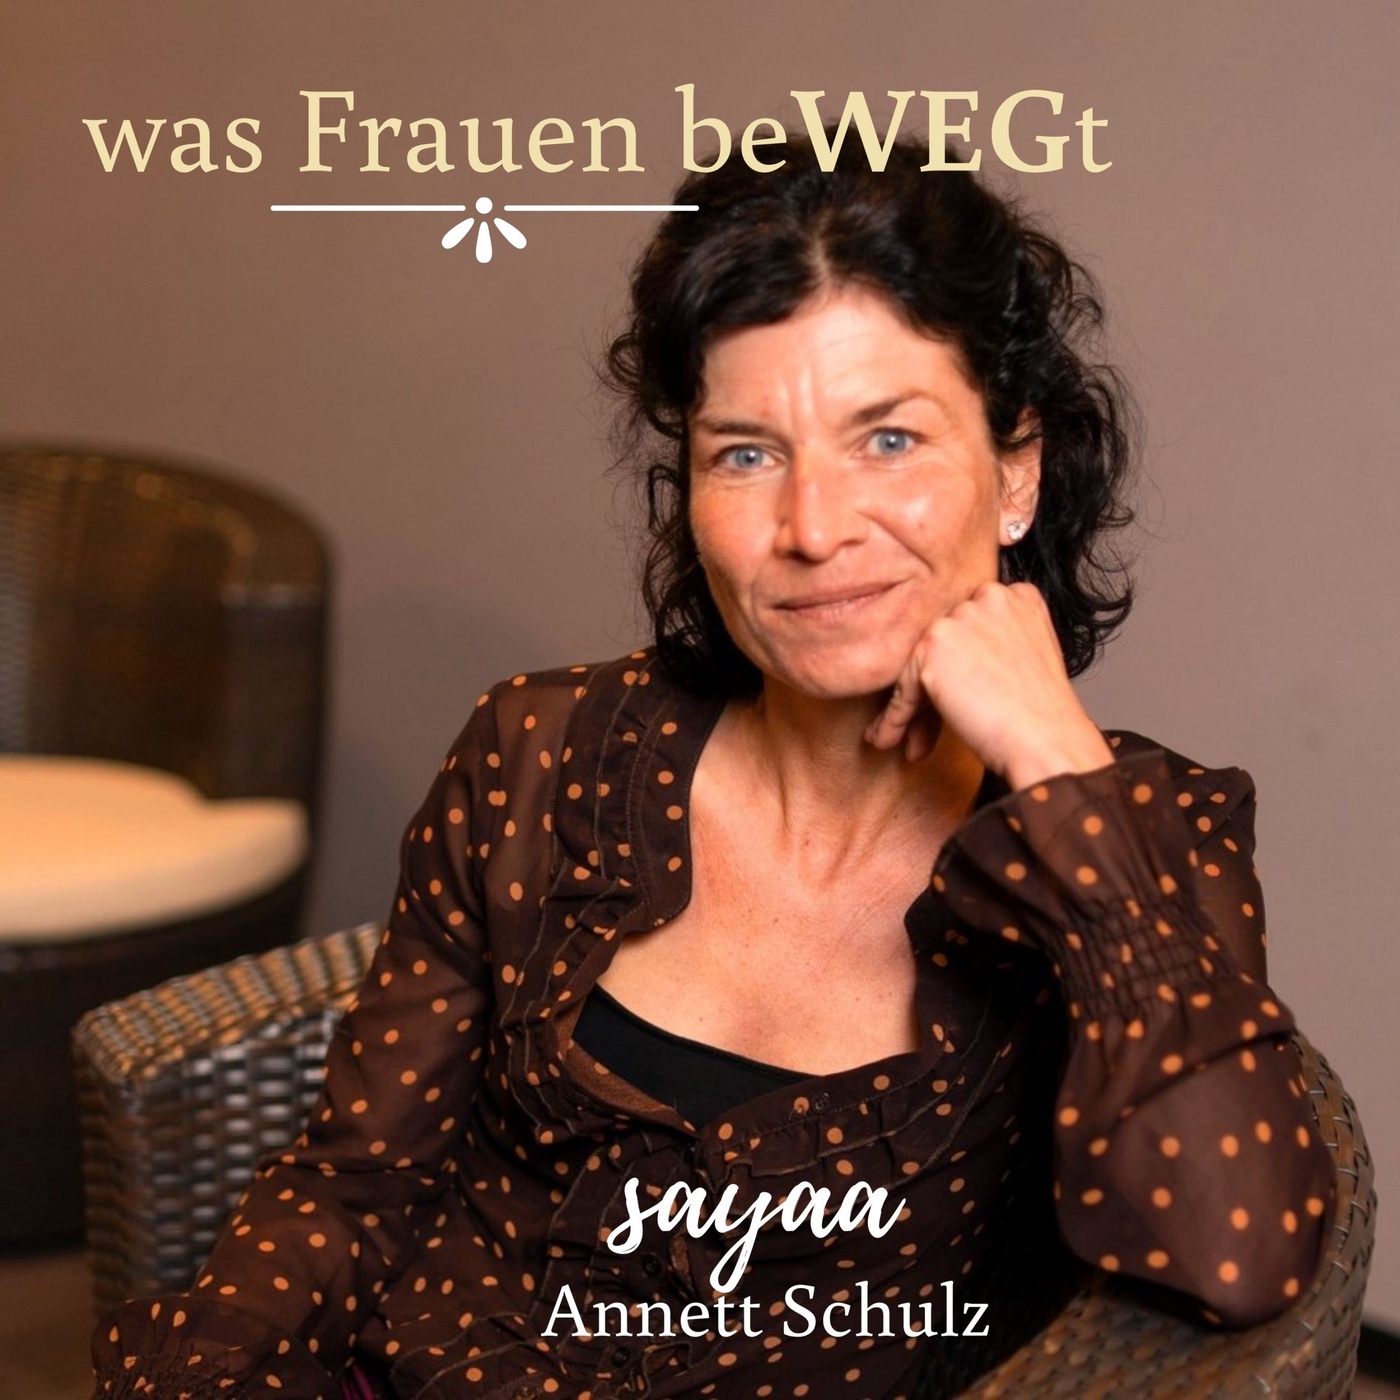 Trailer: was Frauen beWEGt von Annett Schulz